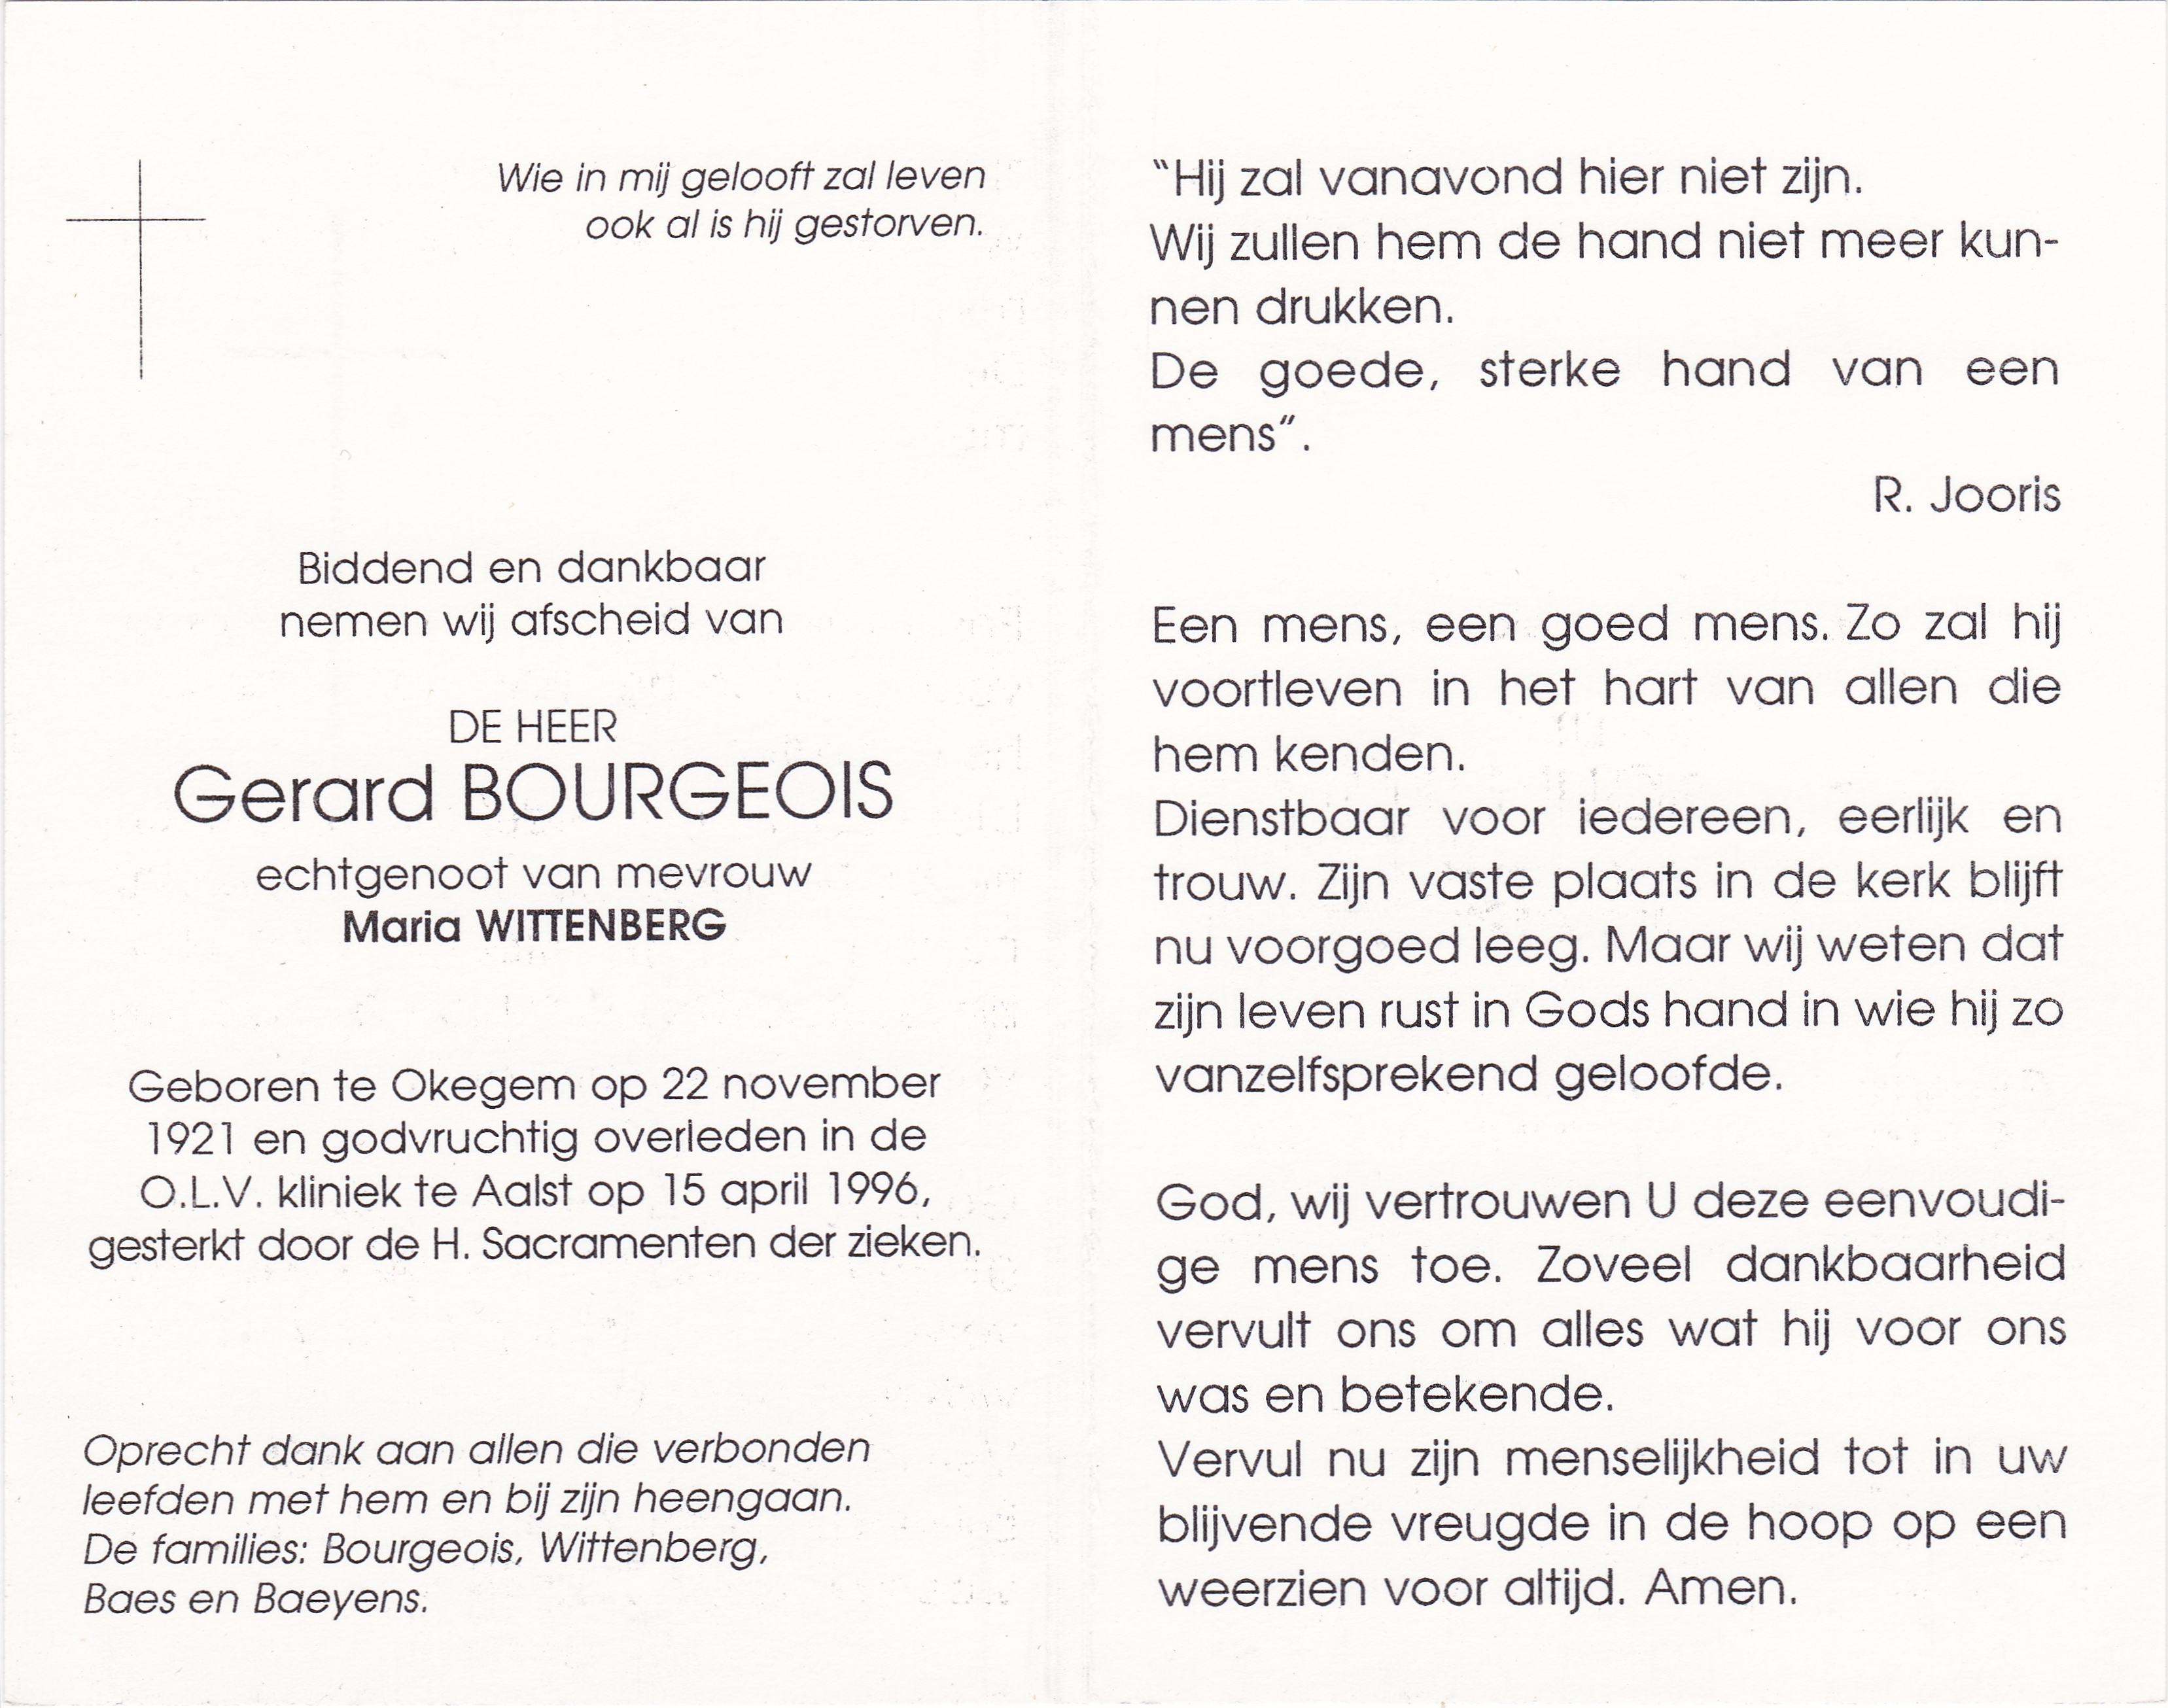 Bourgeois Gerard